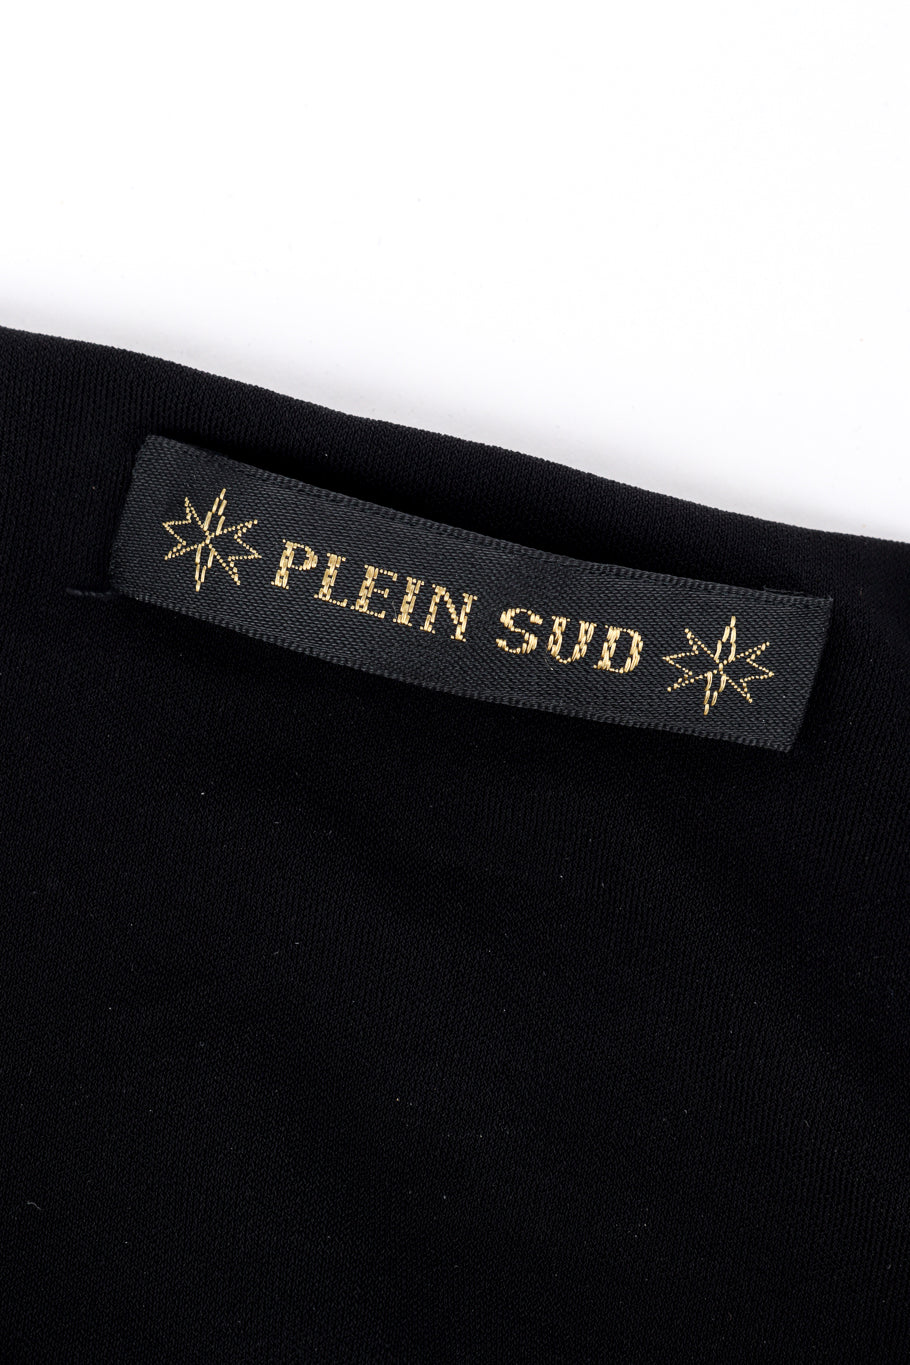 Vintage Plein Sud Chain Panel Dress signature label @recess la